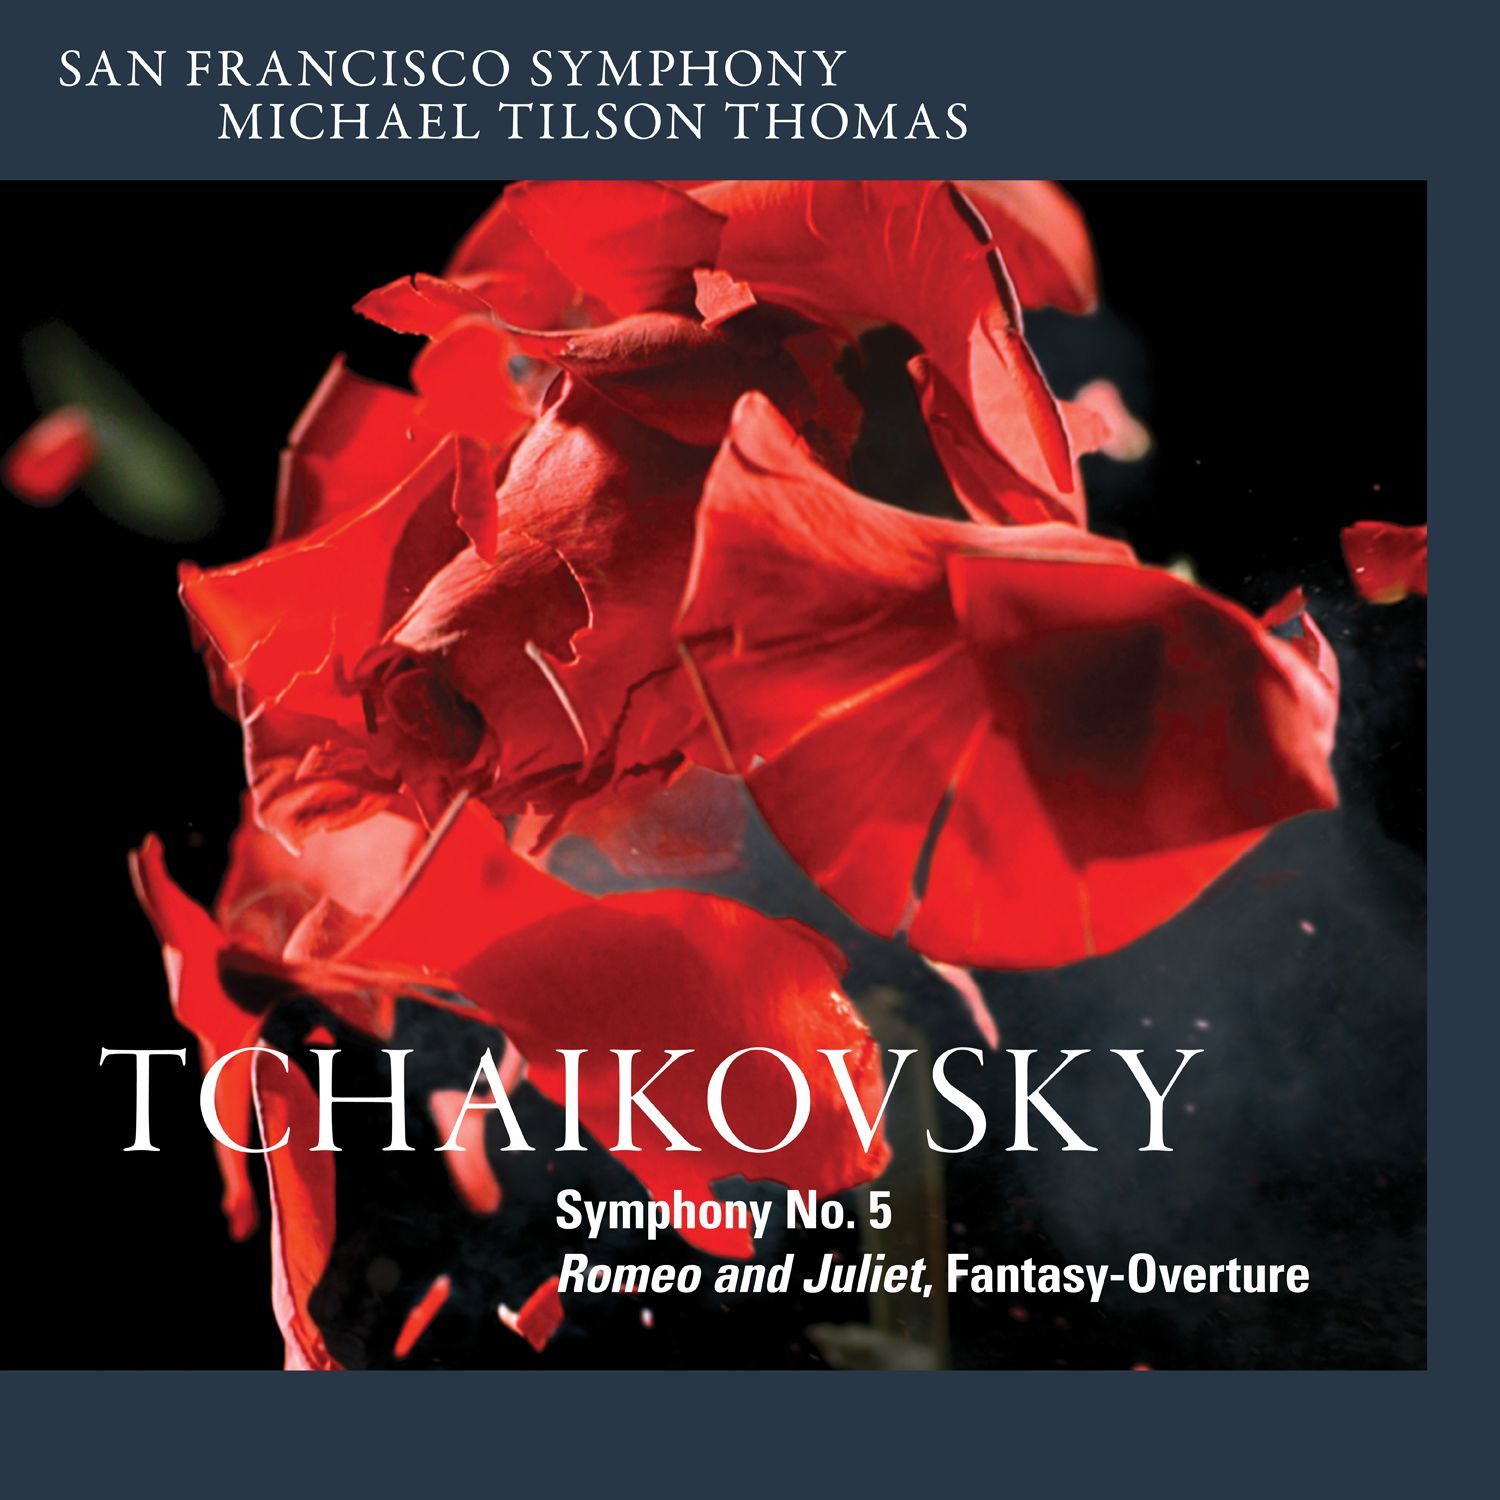 San Francisco Symphony – Tchaikovsky- Symphony No. 5 & Romeo and Juliet, Fantasy-Overture